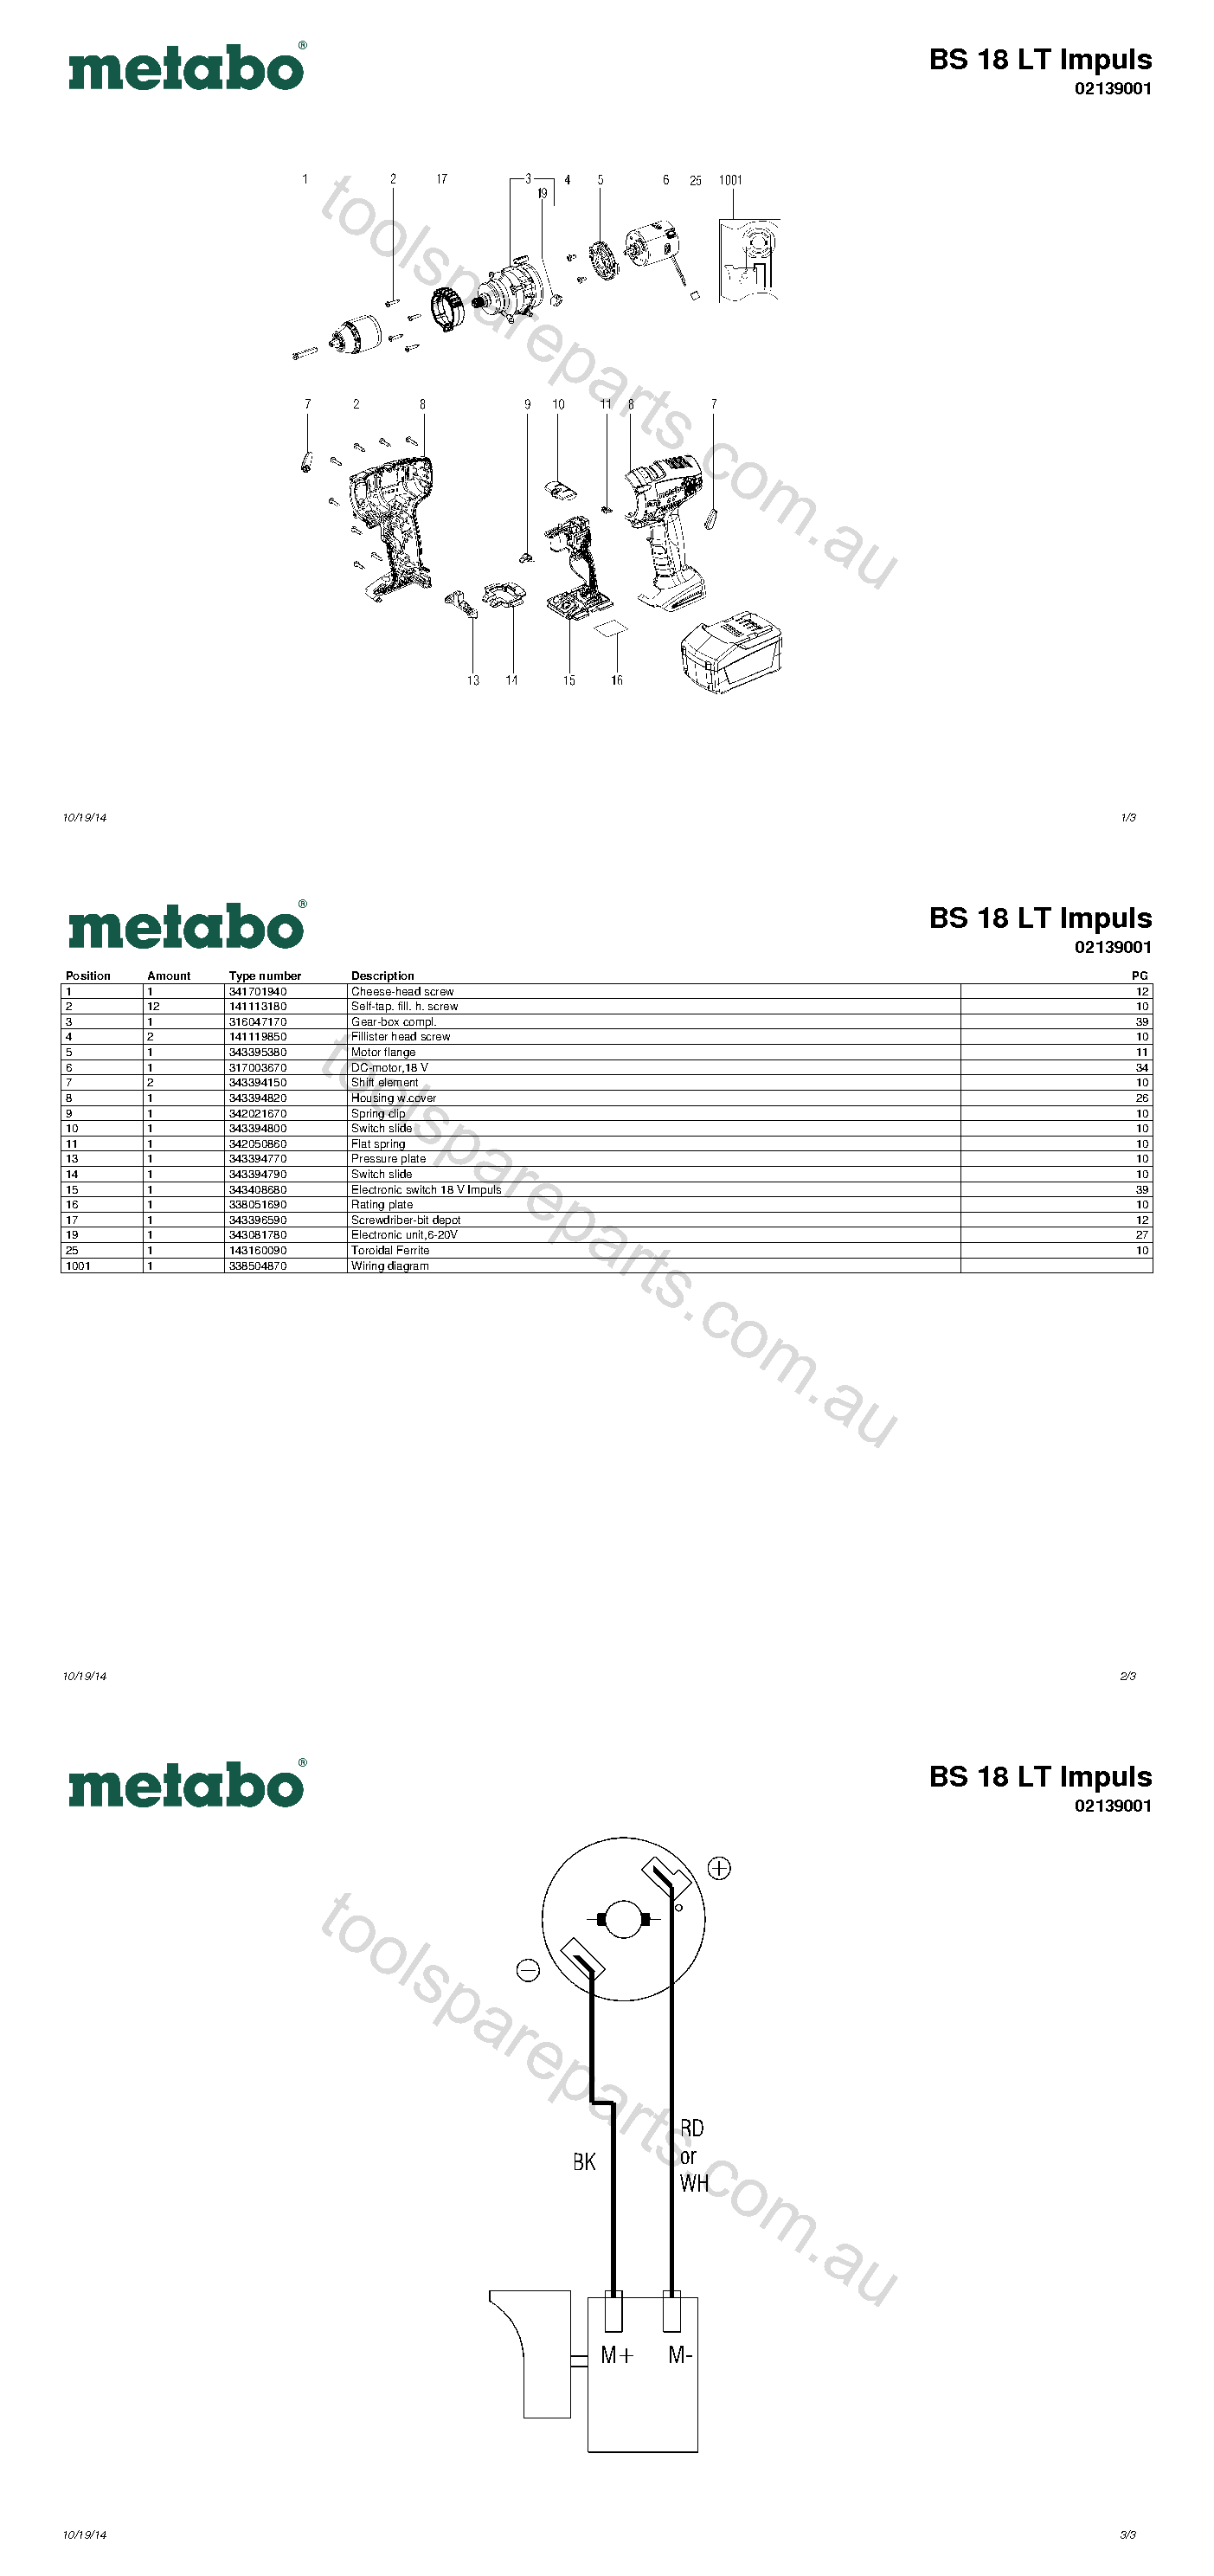 Metabo BS 18 LT Impuls 02139001  Diagram 1